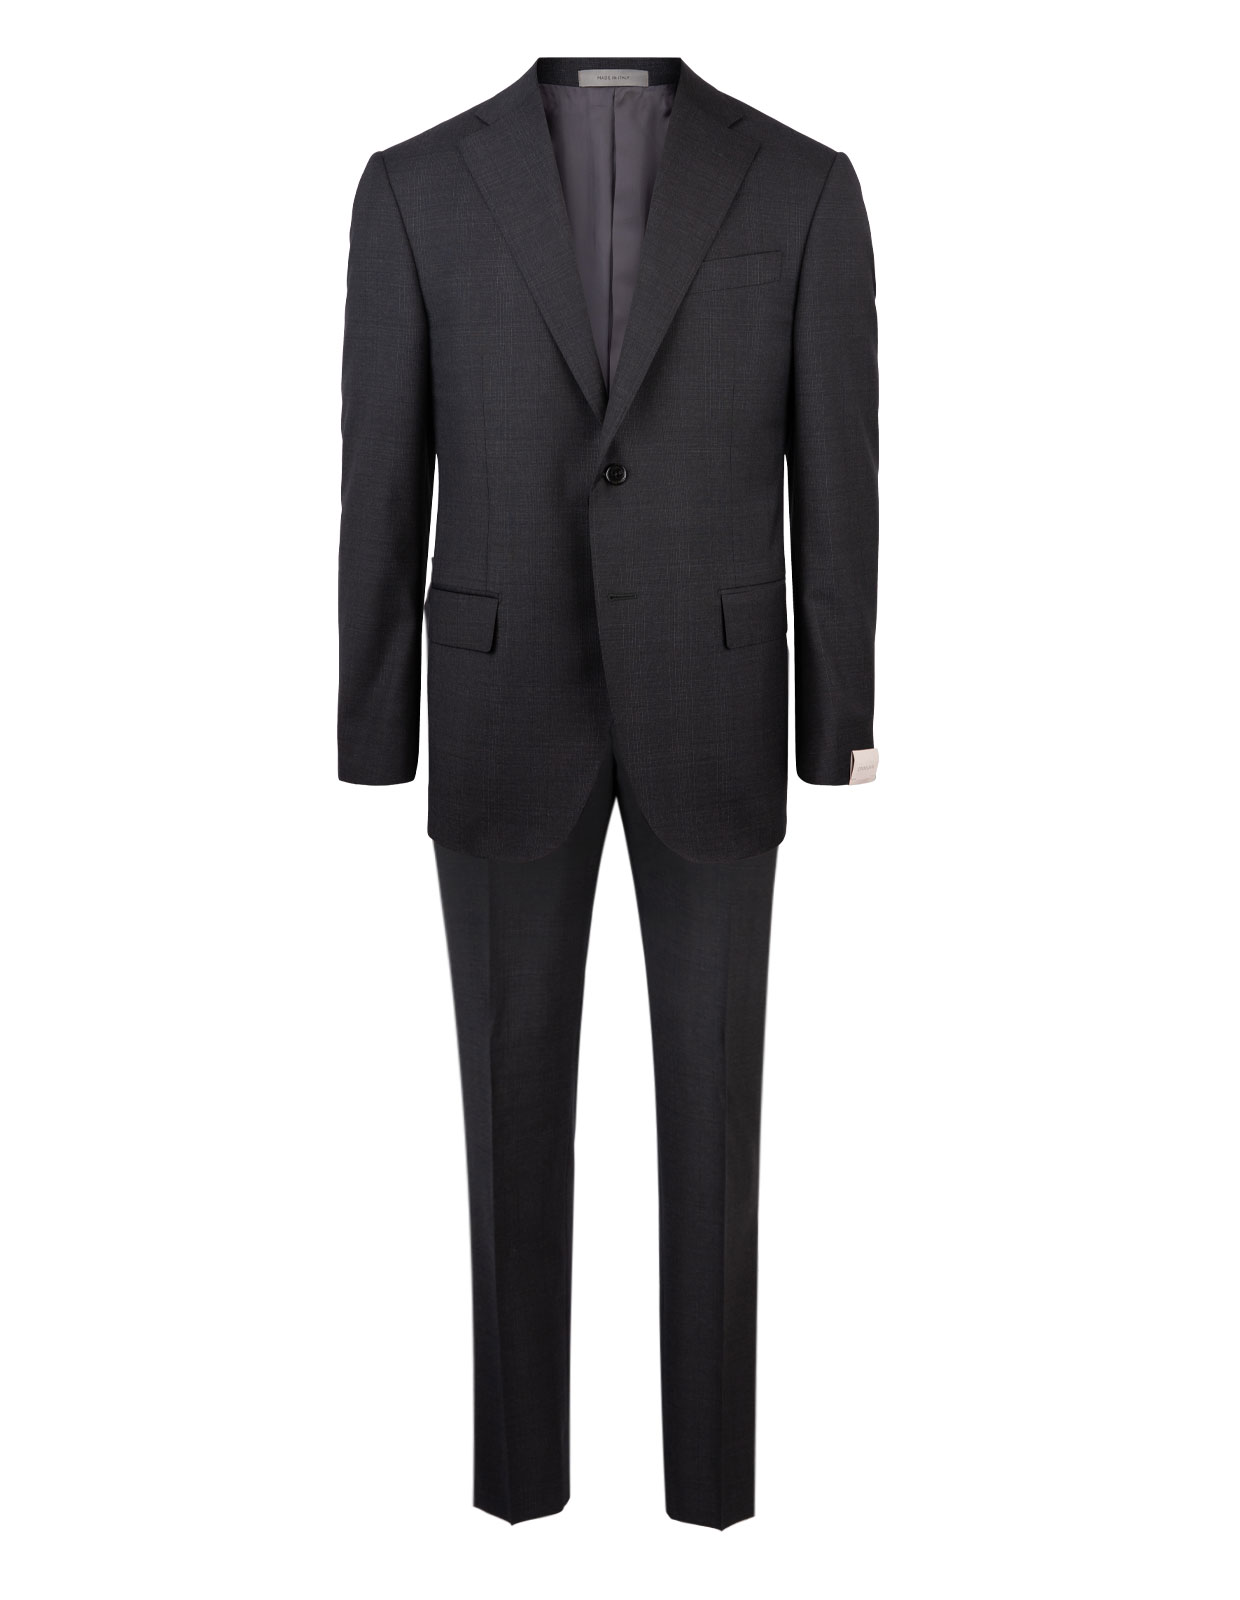 Leader Suit Wool Grey Check Stl 100